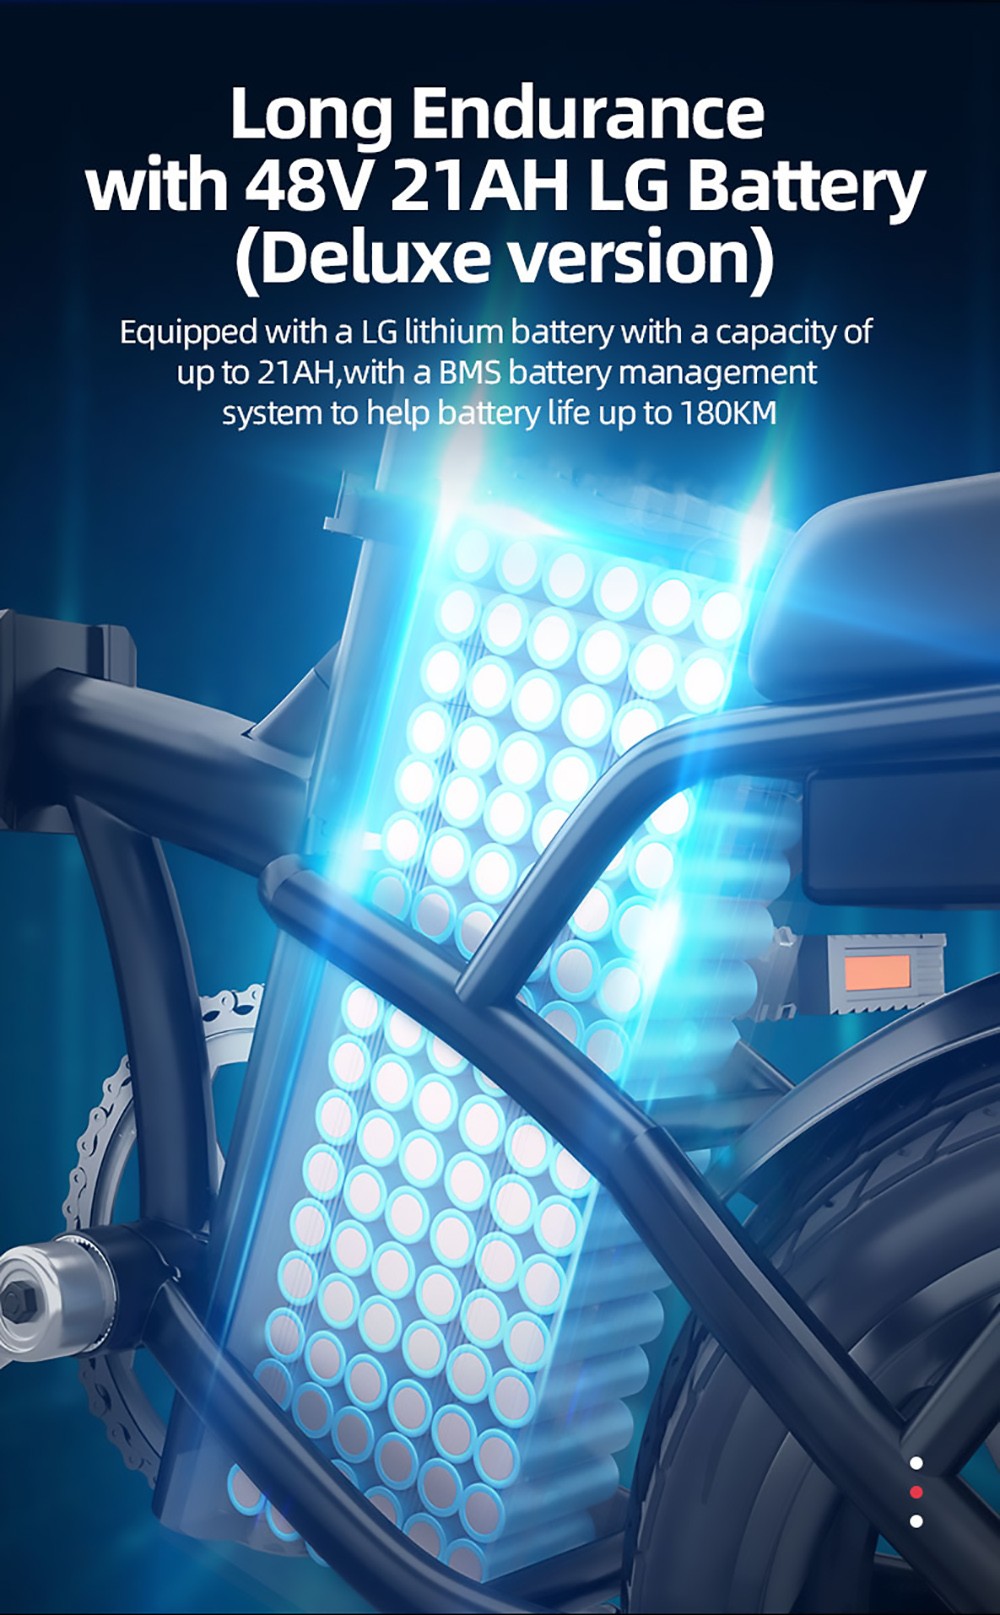 DYU A5 elektromos kerékpár 350 W motor maximális sebesség 25 km/h 36 V 7.5 Ah akkumulátor 70 km maximális hatótáv - fehér